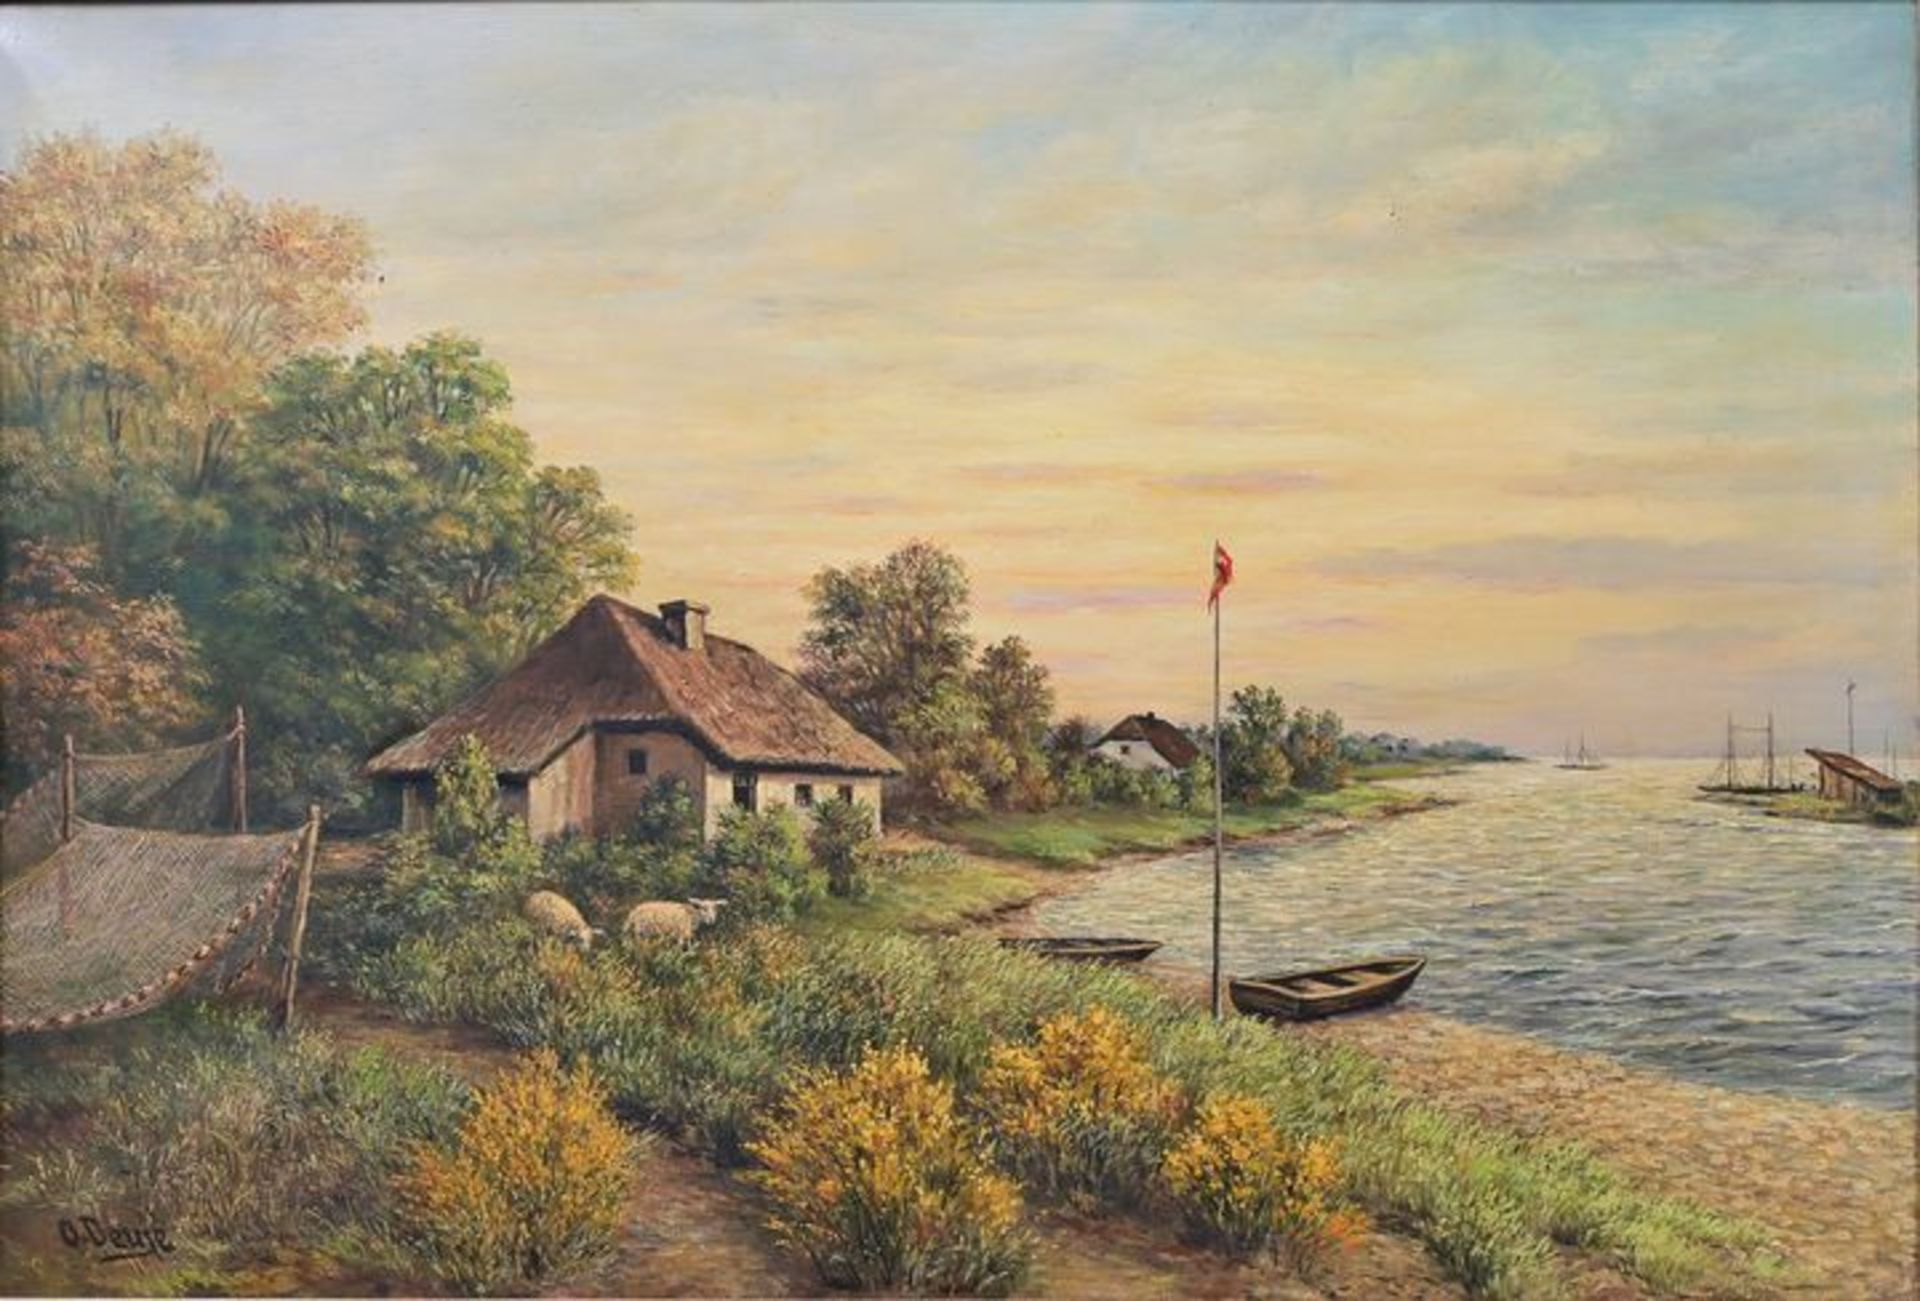 Boddenlandschaft/ landscape painting